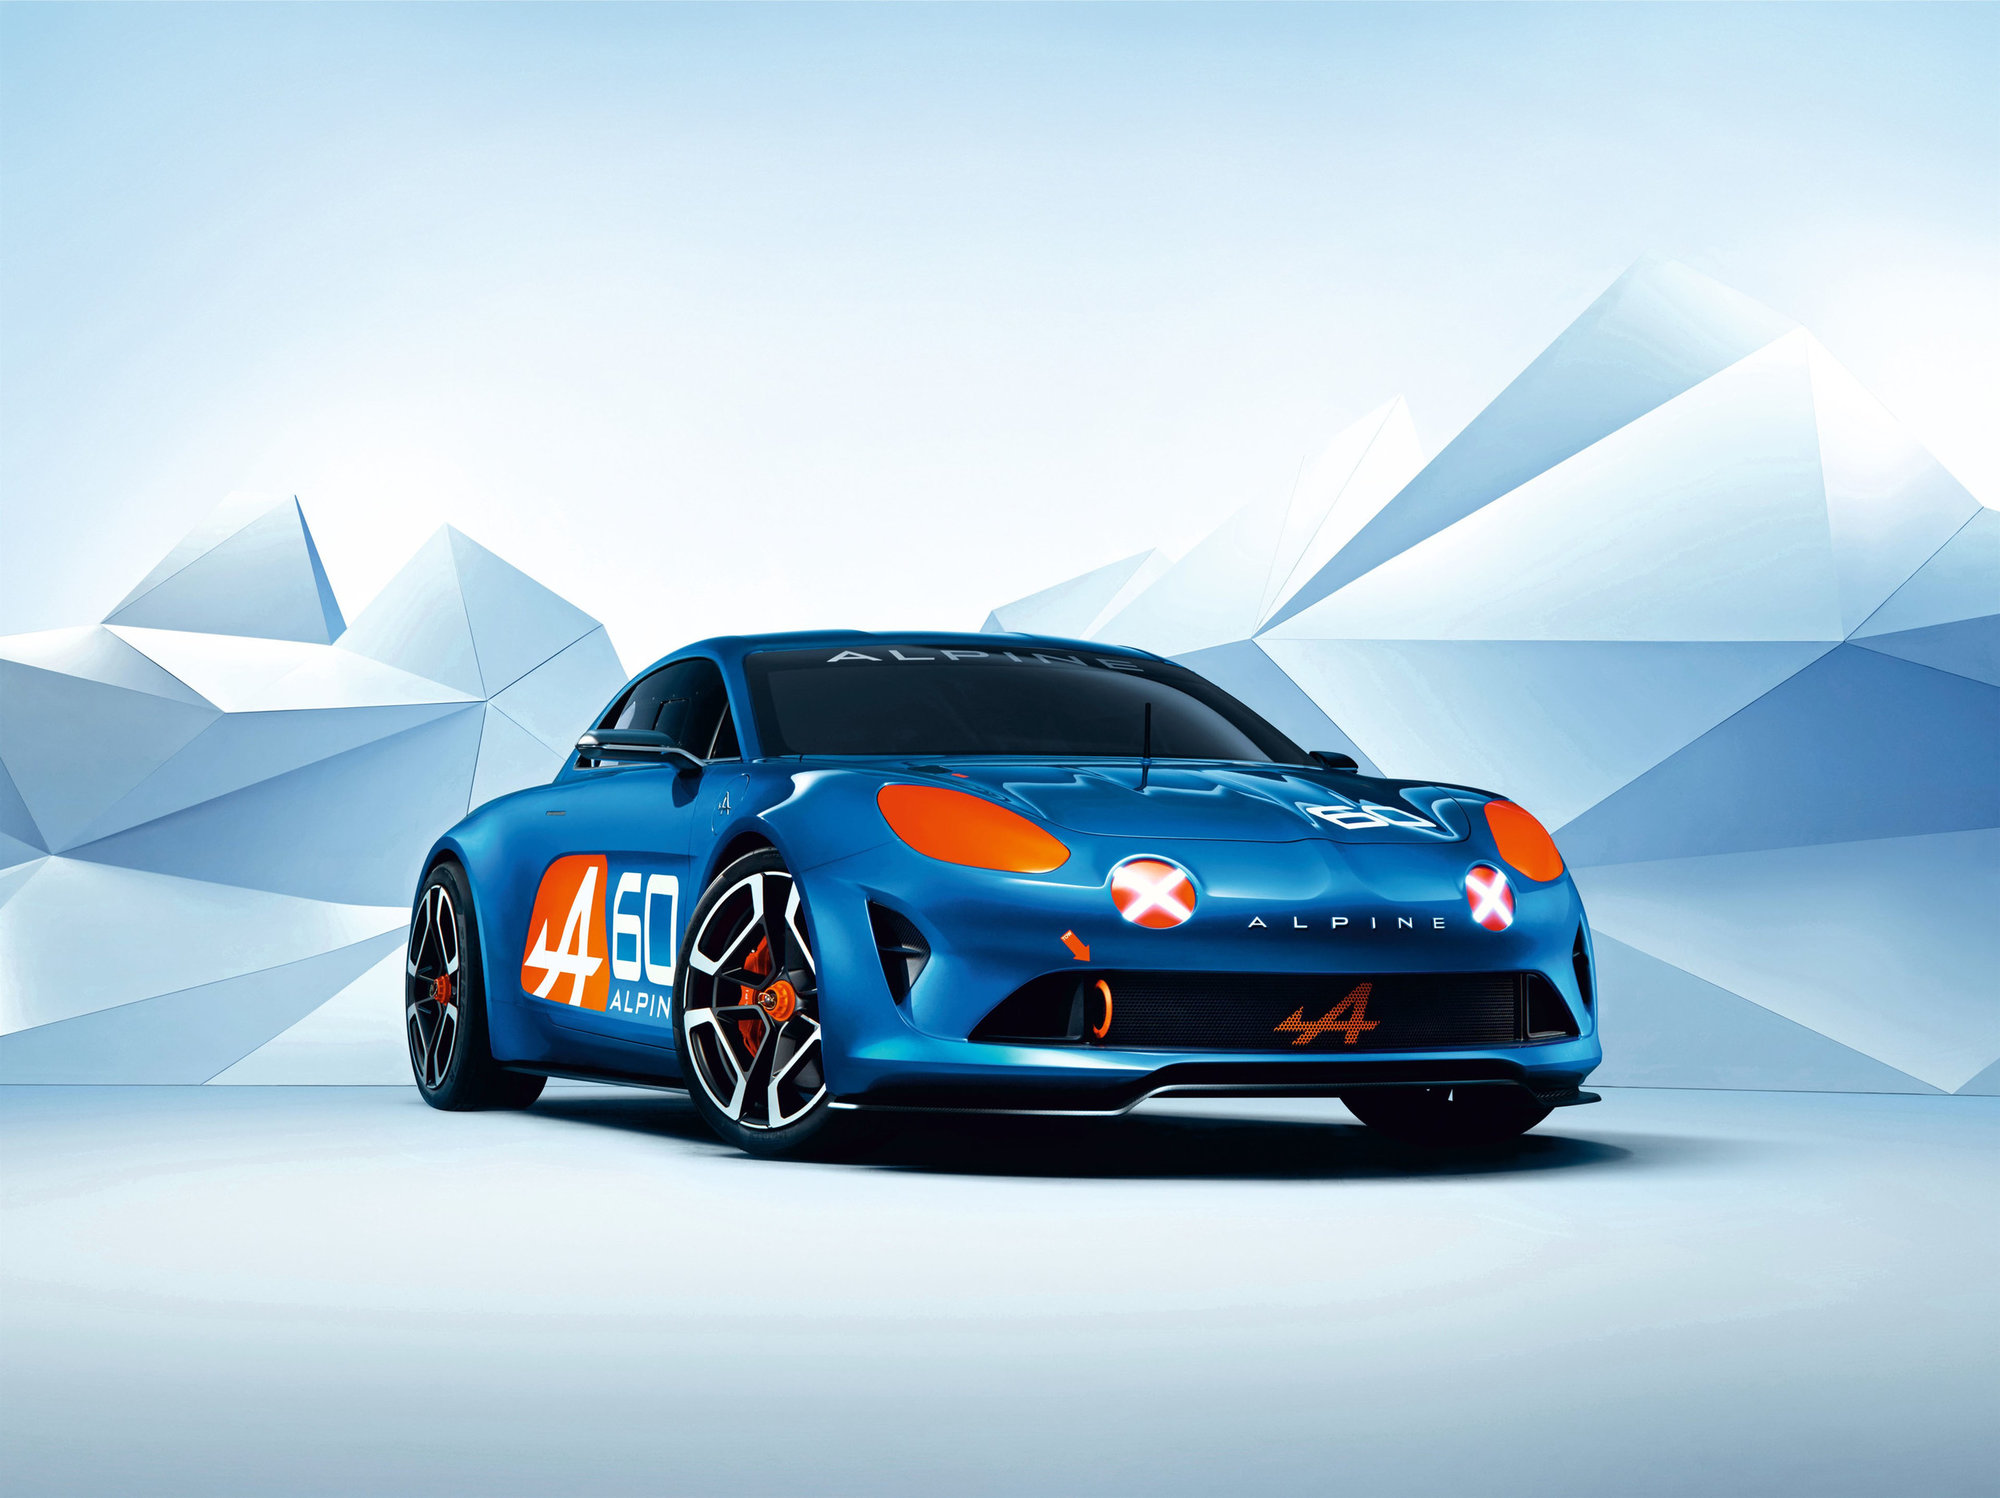 Nový vůz Alpine byl představen v Le Mans